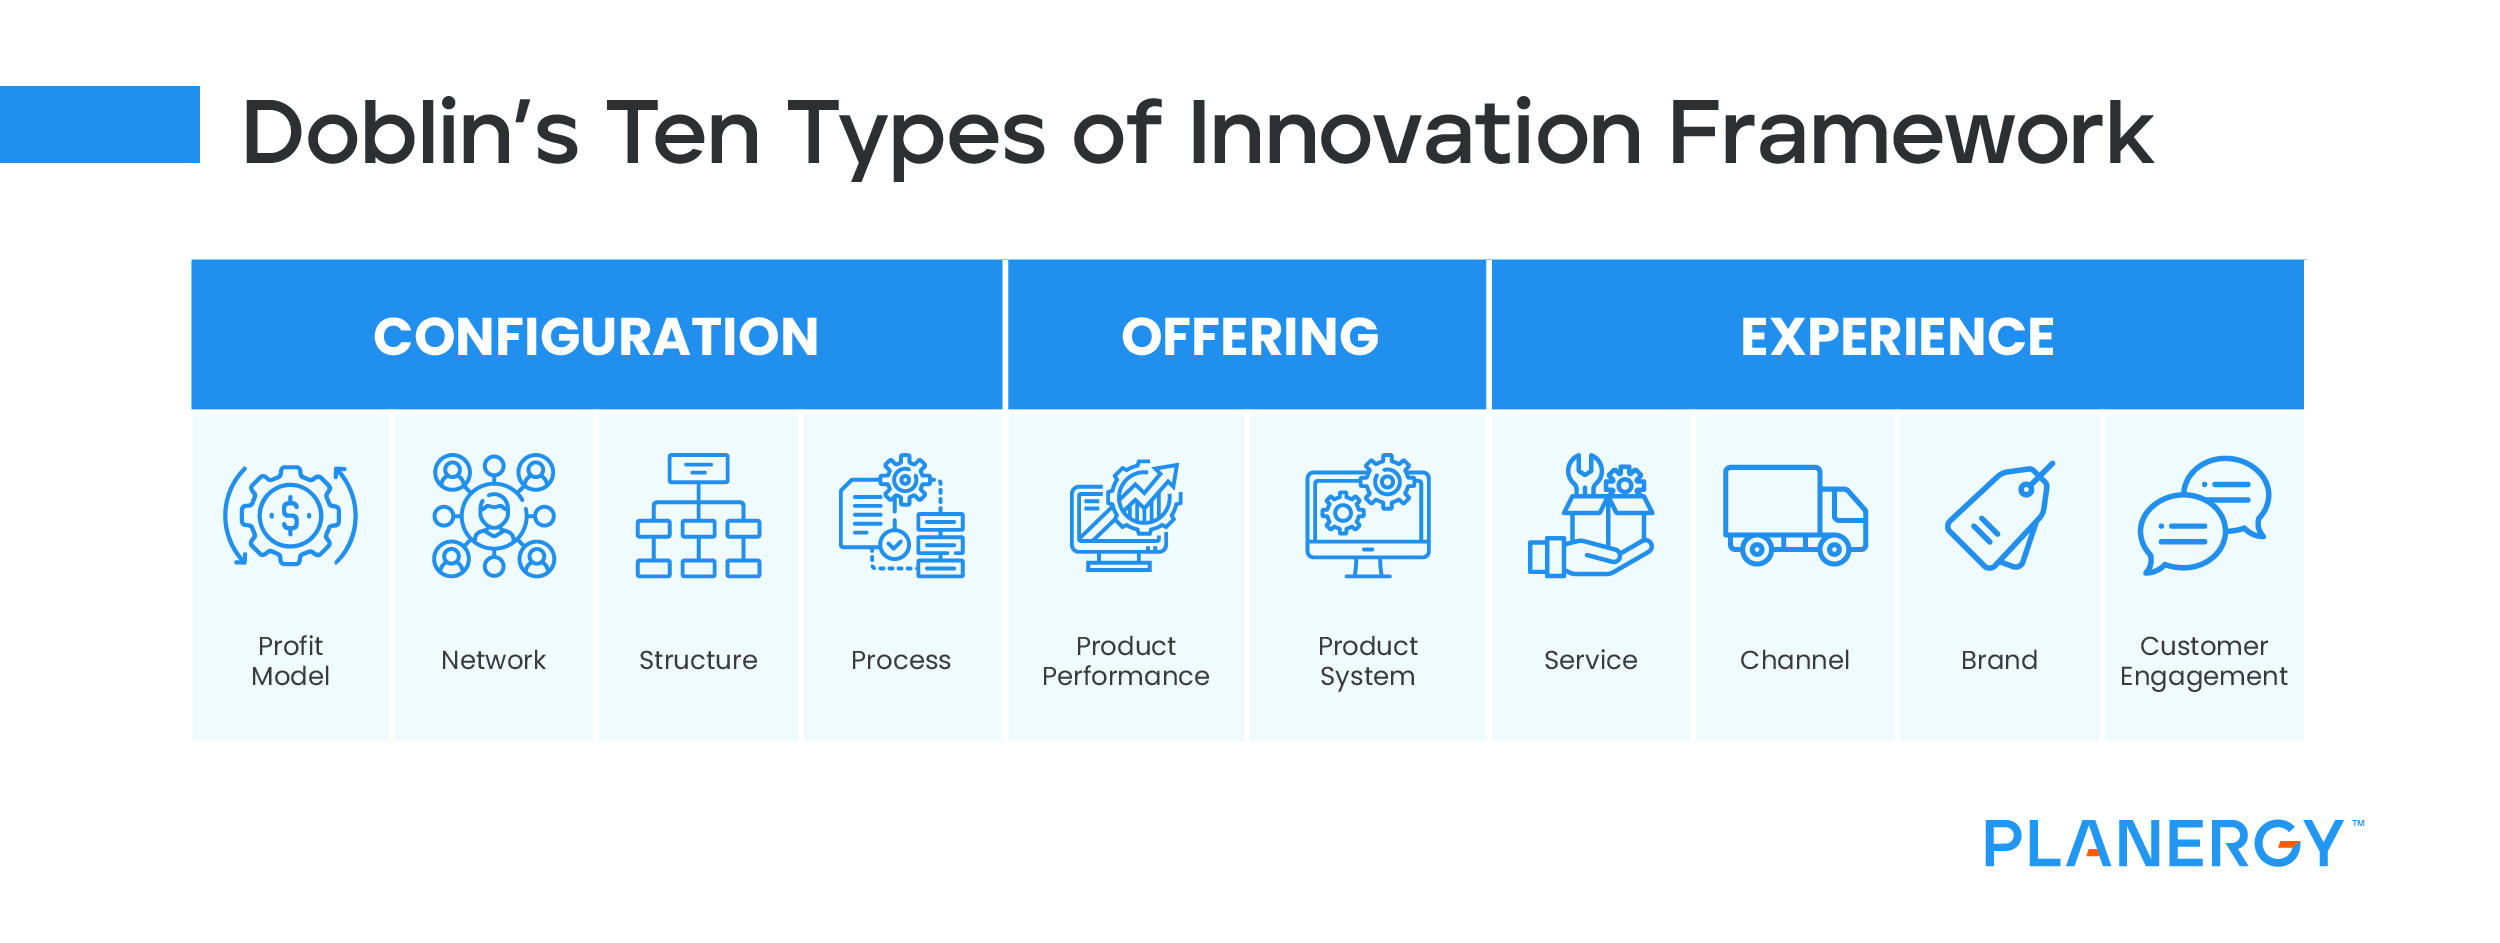 Doblins Ten Types of Innovation